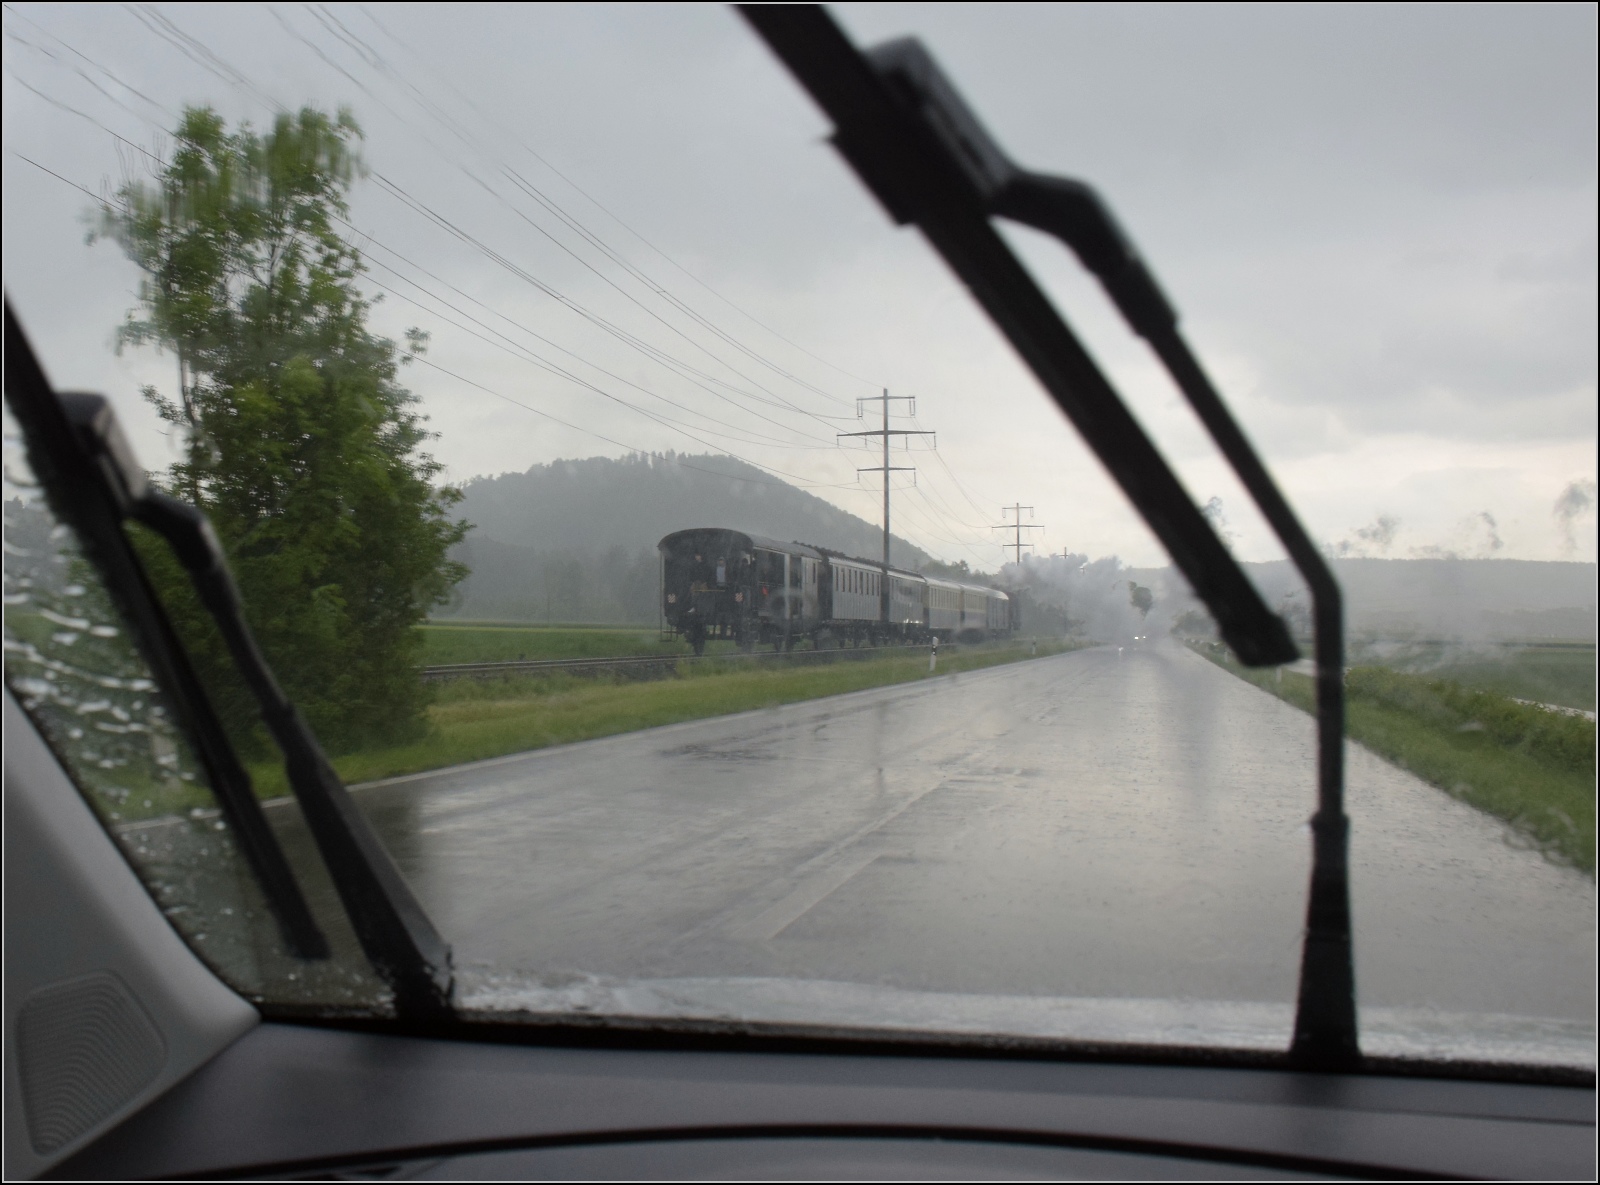 Seit 54 Jahren das erste durchgehende Personenzugpaar auf der Strecke Winterthur – Singen über Etzwilen.

Die Eb 3/5 9 der BT hat bei geöffneten Himmelsschleusen keine Probleme mit Aquaplaning. Mai 2023.